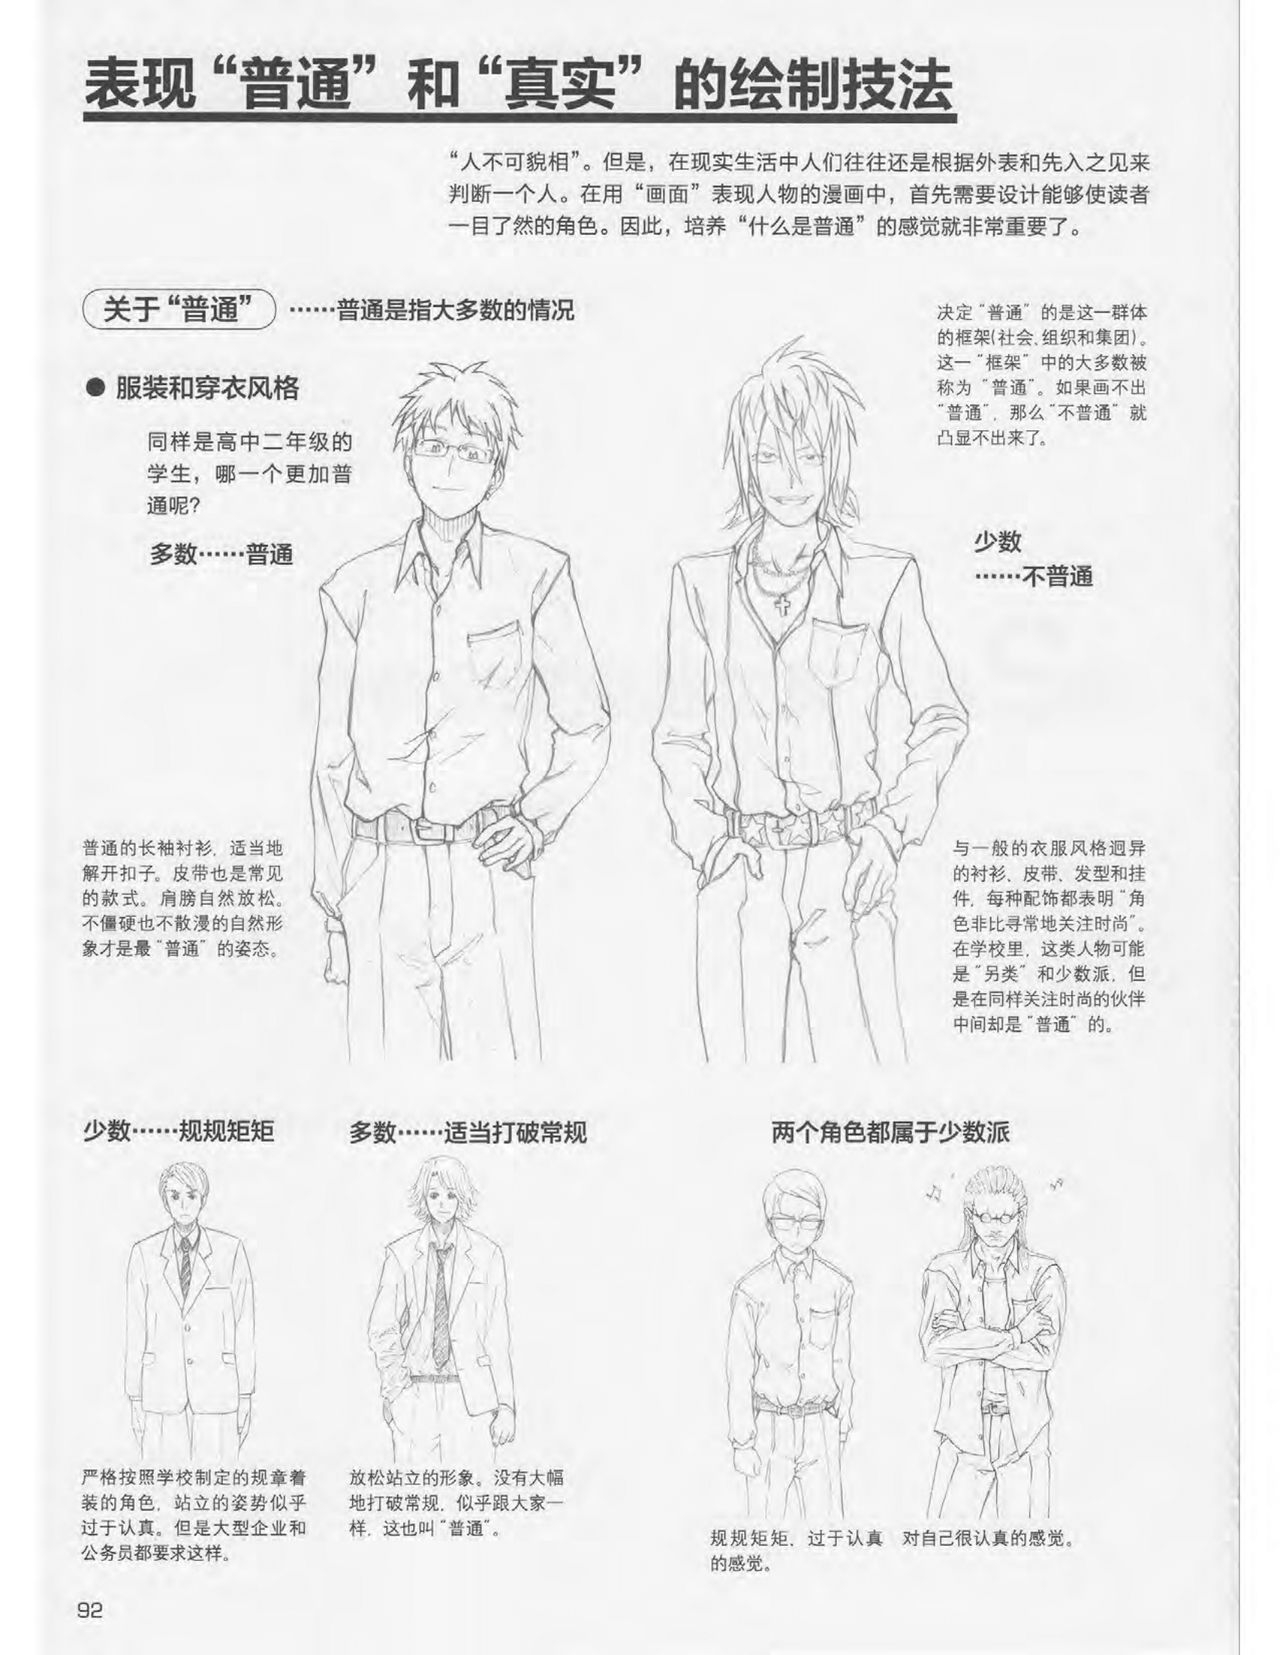 Japanese Manga Master Lecture 3: Lin Akira and Kakumaru Maru Talk About Glamorous Character Modeling 92